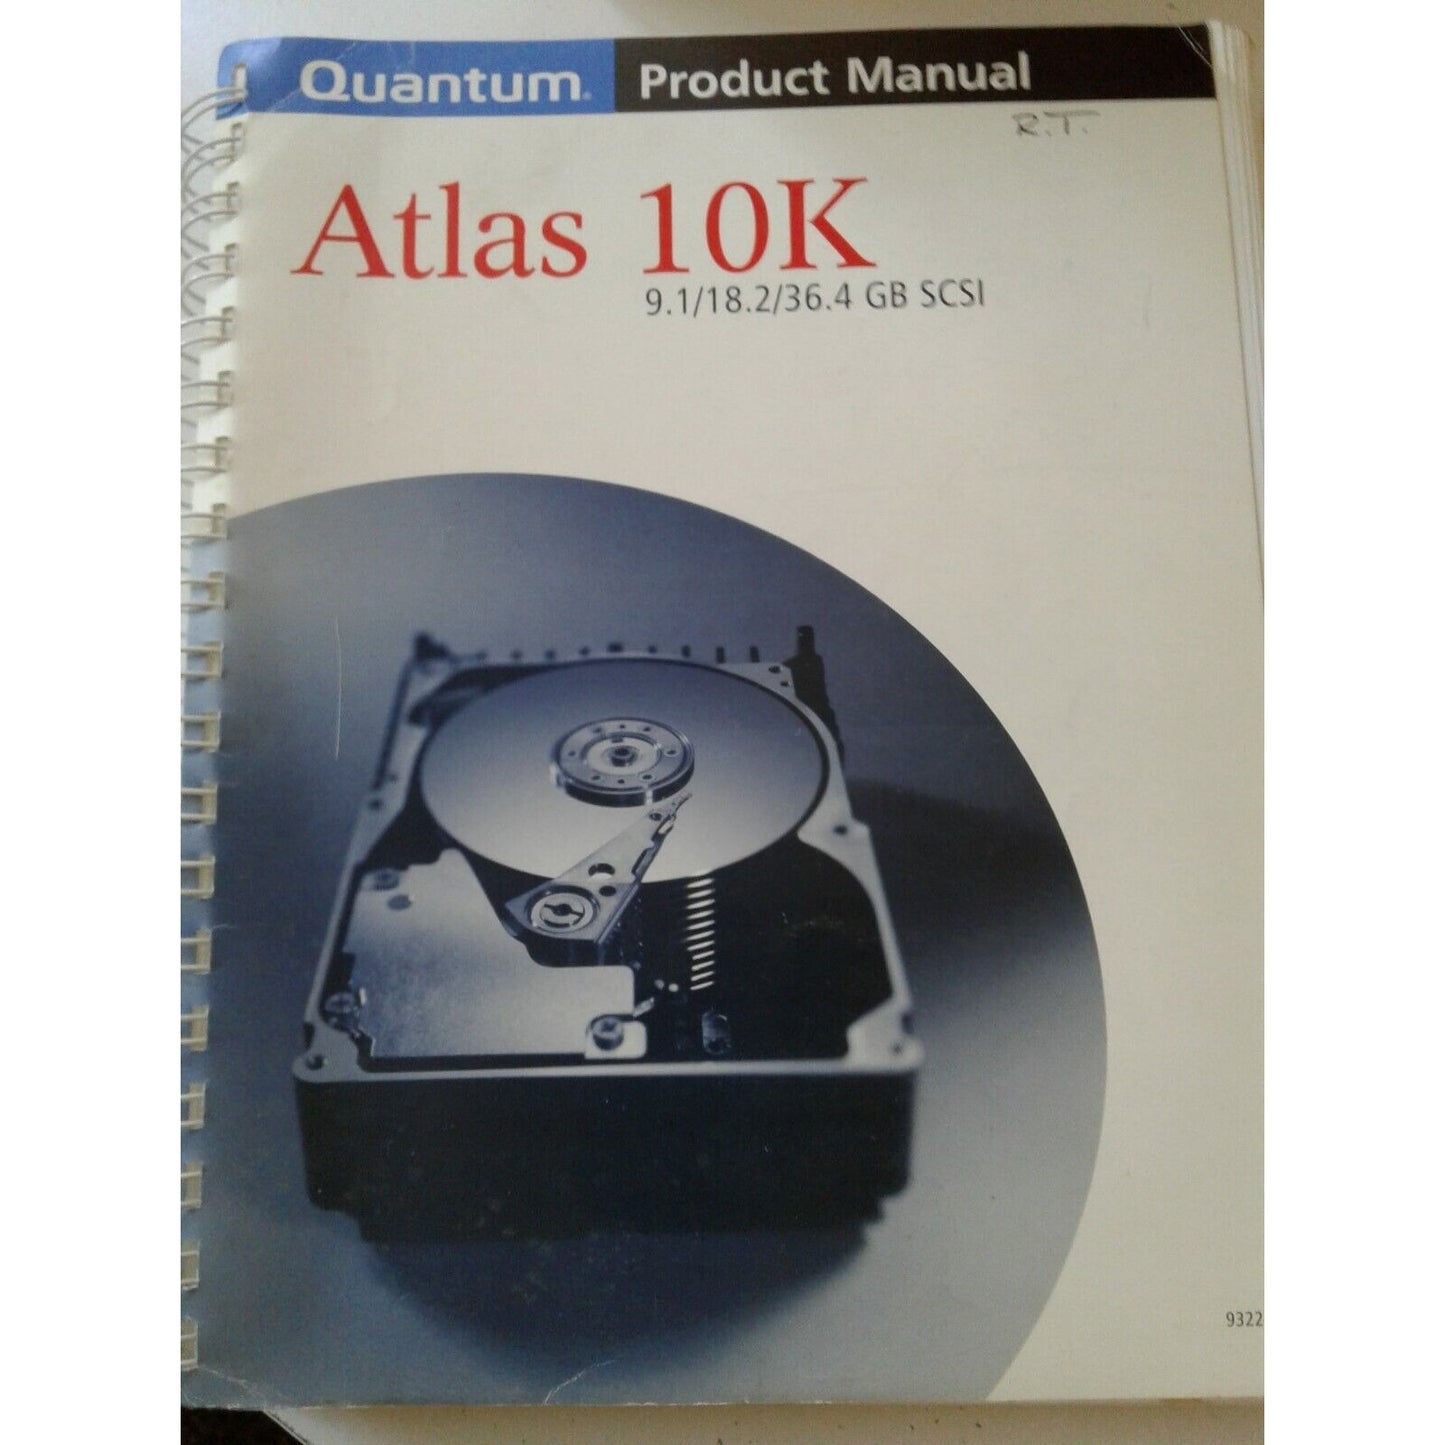 Quantum Product Manual Atlas 10K 9.1 / 18.2 / 36.4 GB SCSI